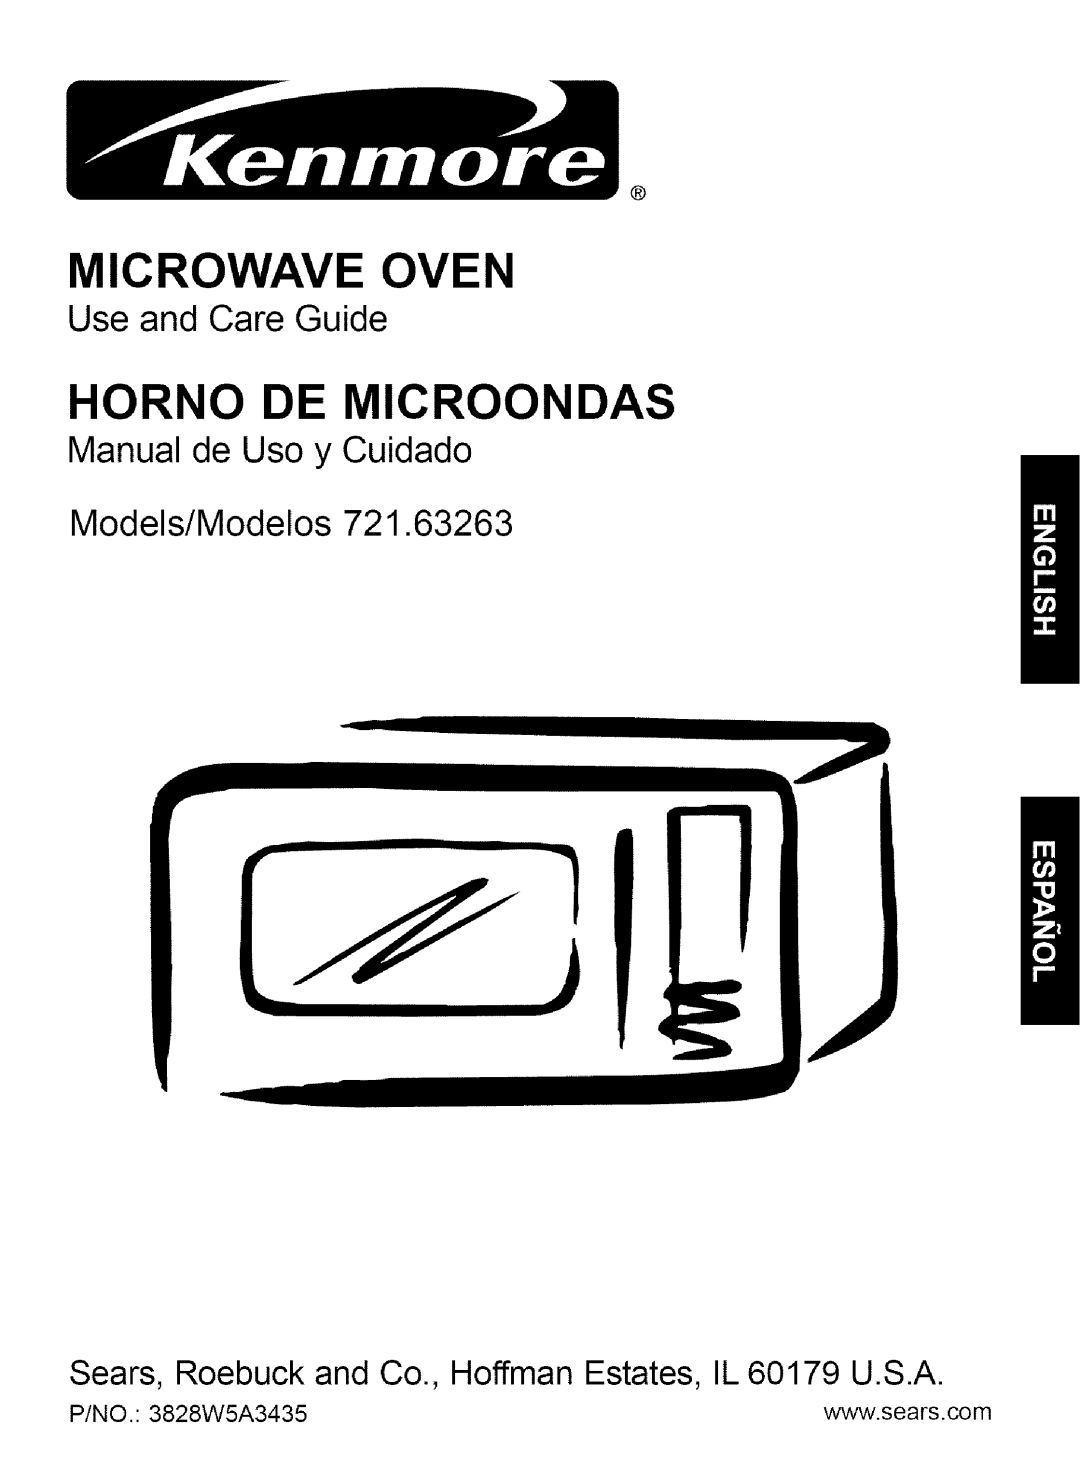 Kenmore 721.63263 manual Microwave Oven, Horno De Microondas, Use and Care Guide, Manual de Uso y Cuidado Models/Modelos 